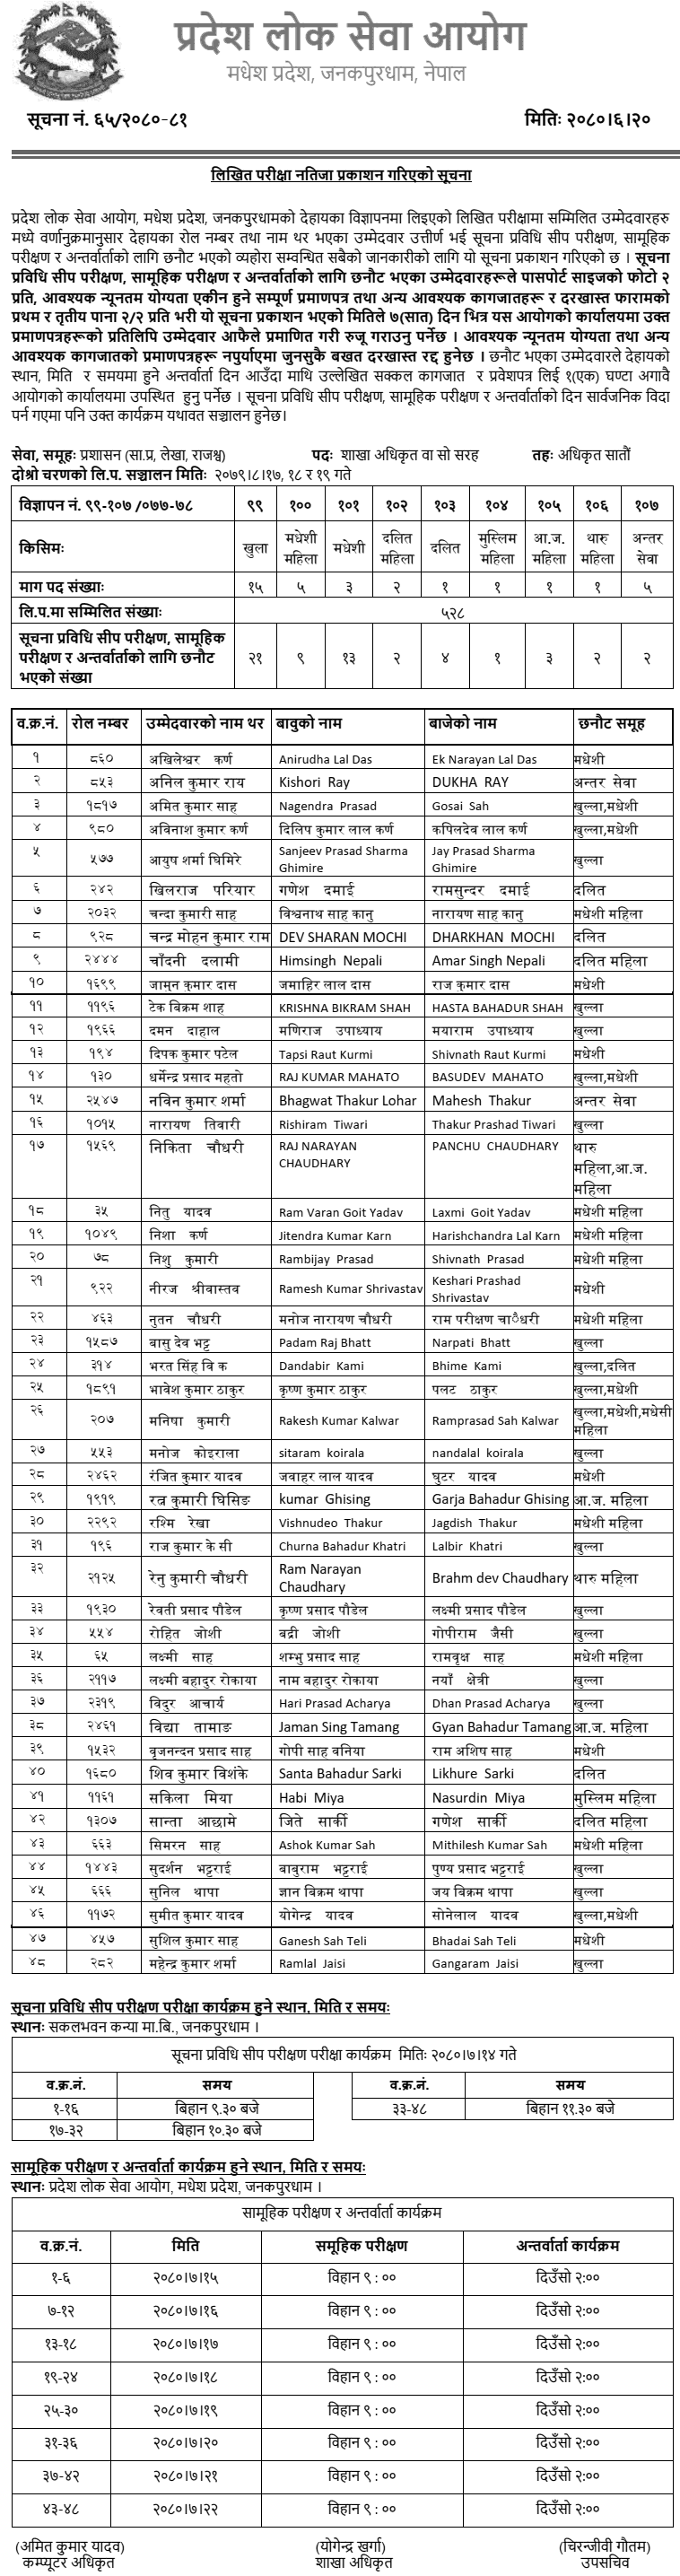 Madhesh Pradesh Lok Sewa Aayog Written Exam Result of Section Officer 2080